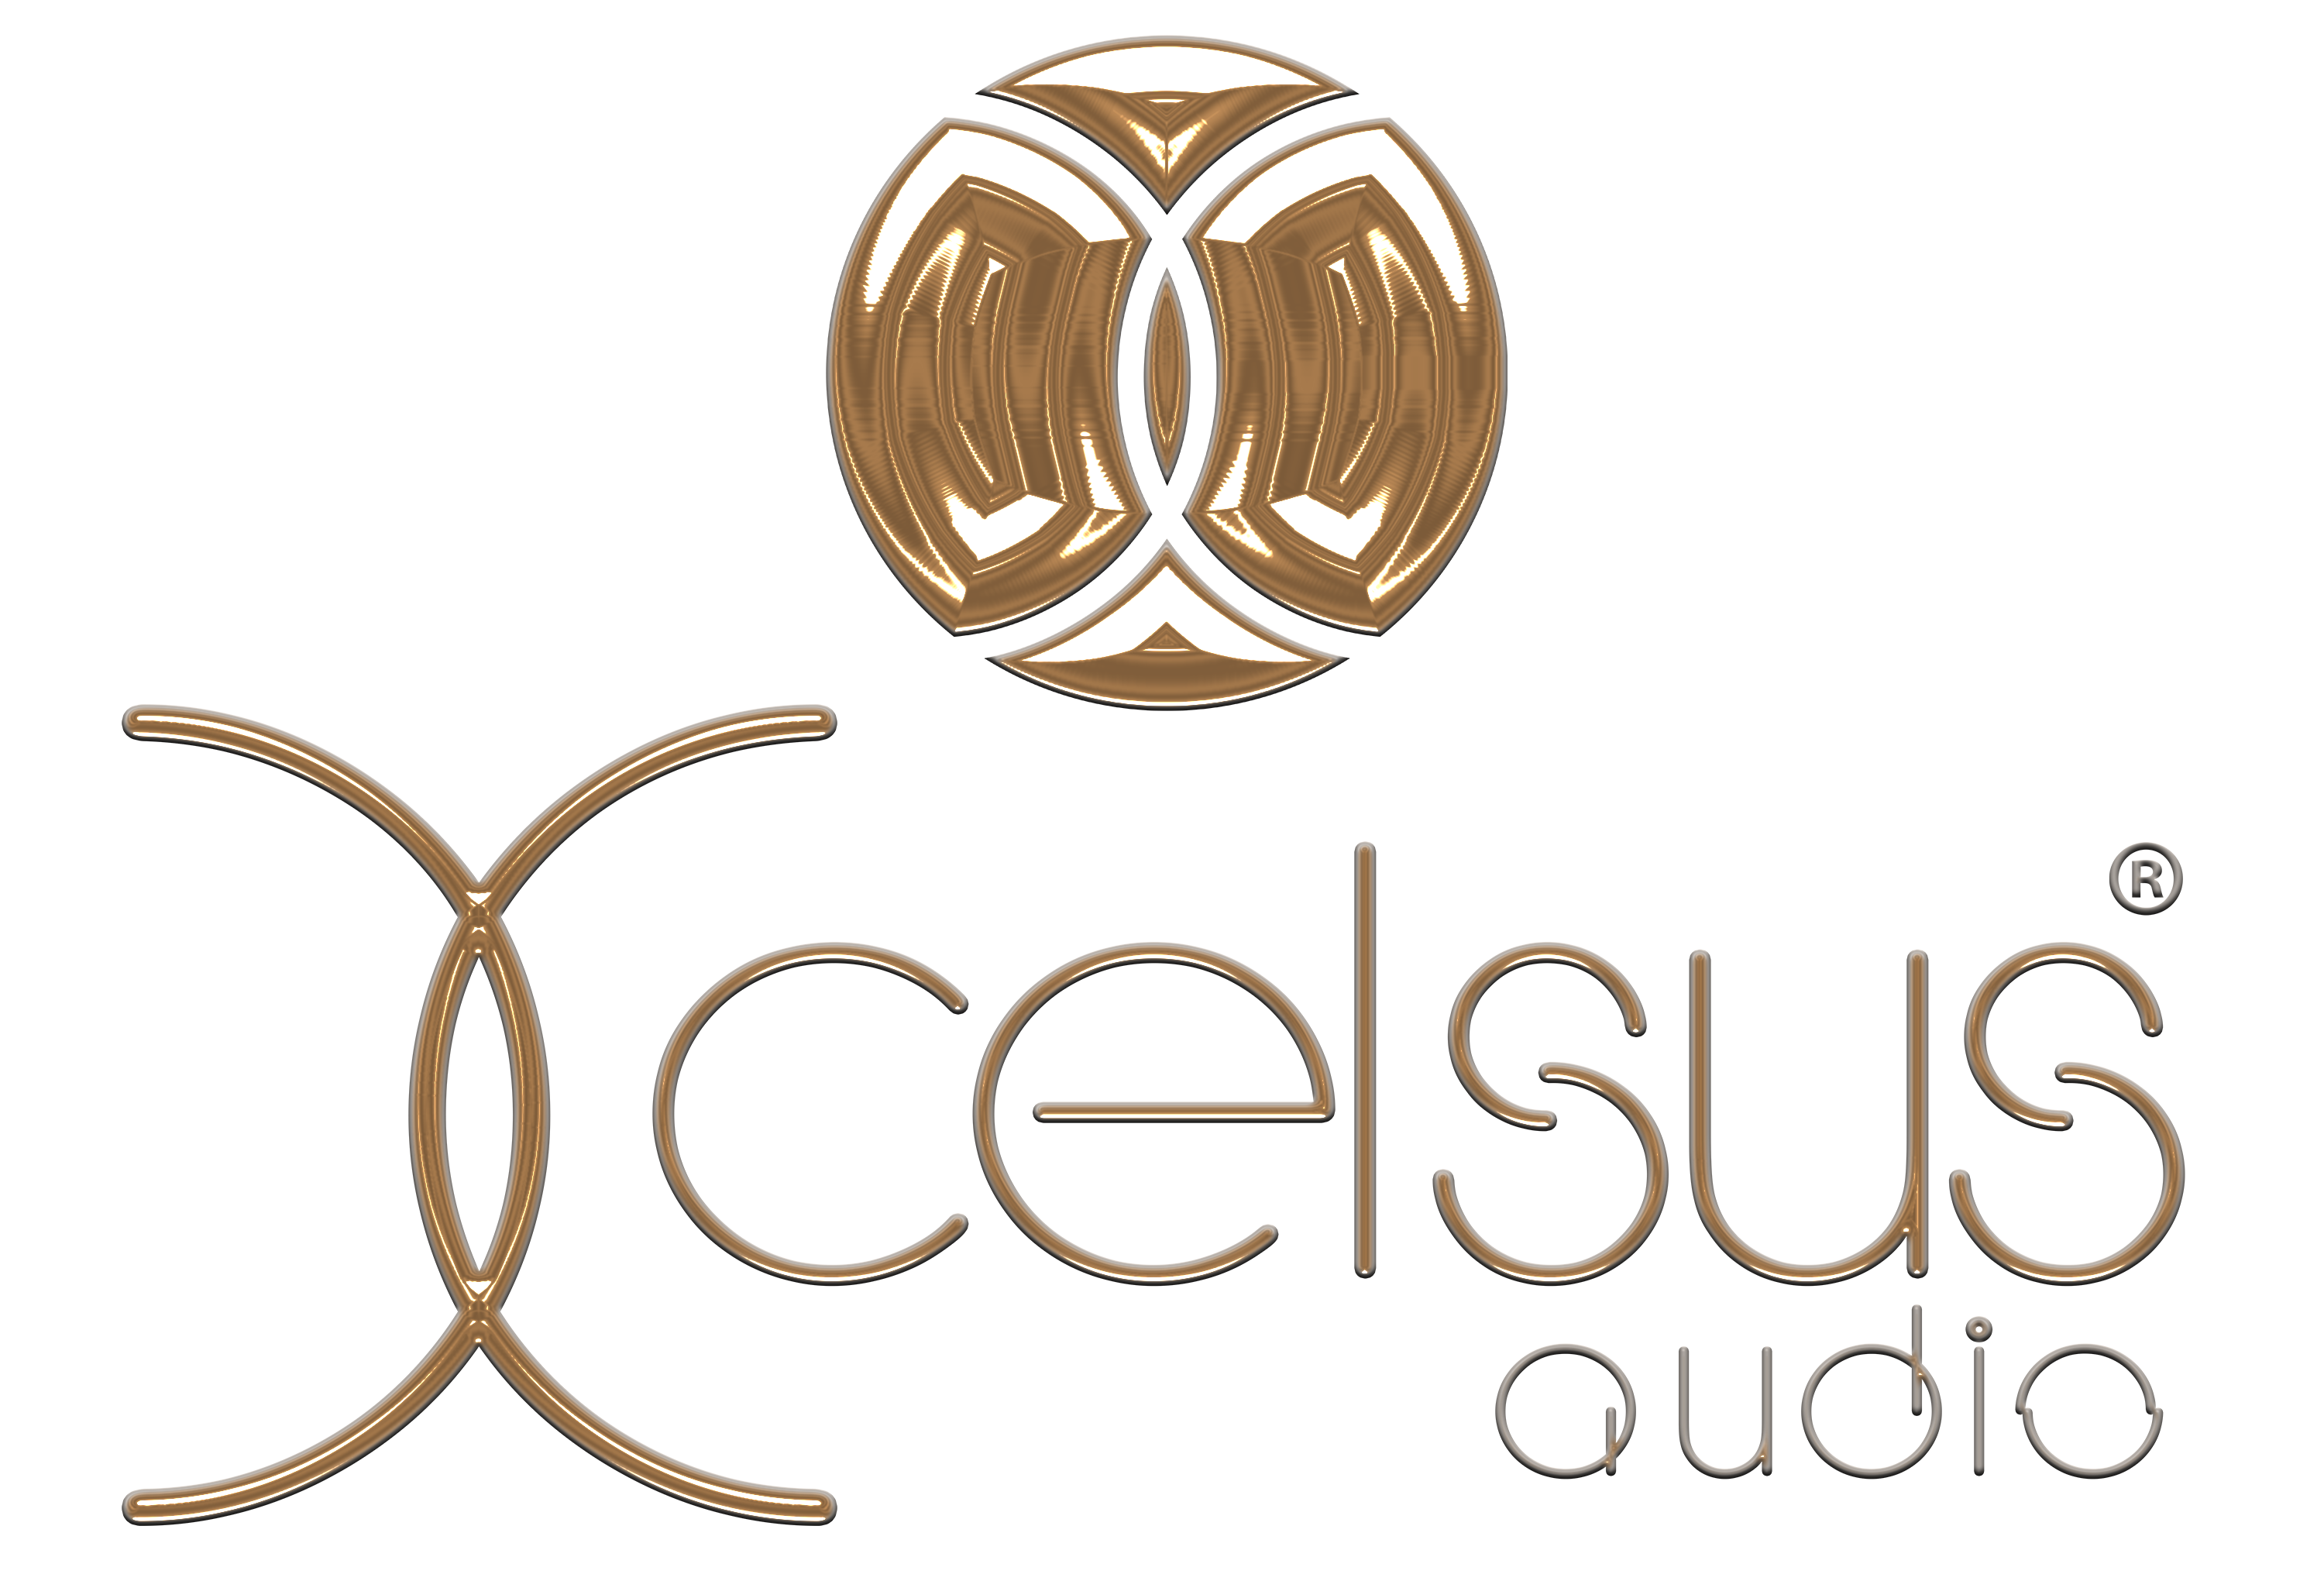 Xcelsus Audio